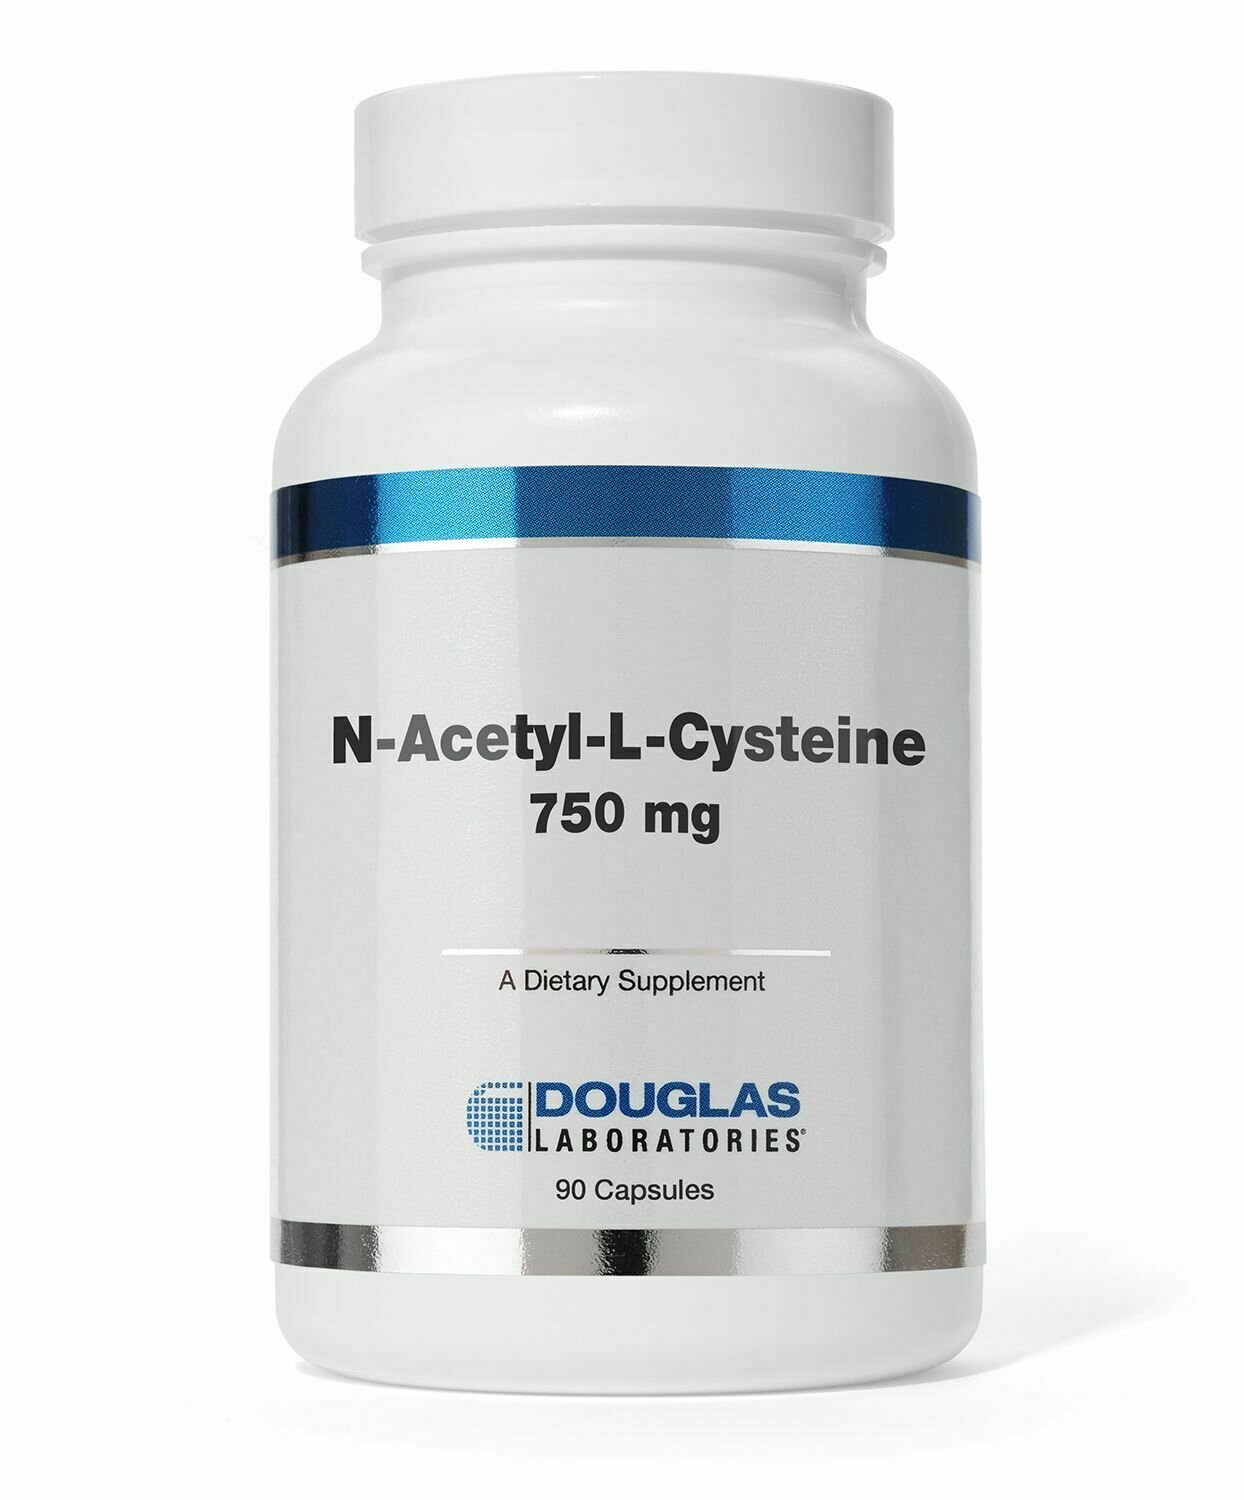 N-Acetyl-L-Cysteine 750 mg.